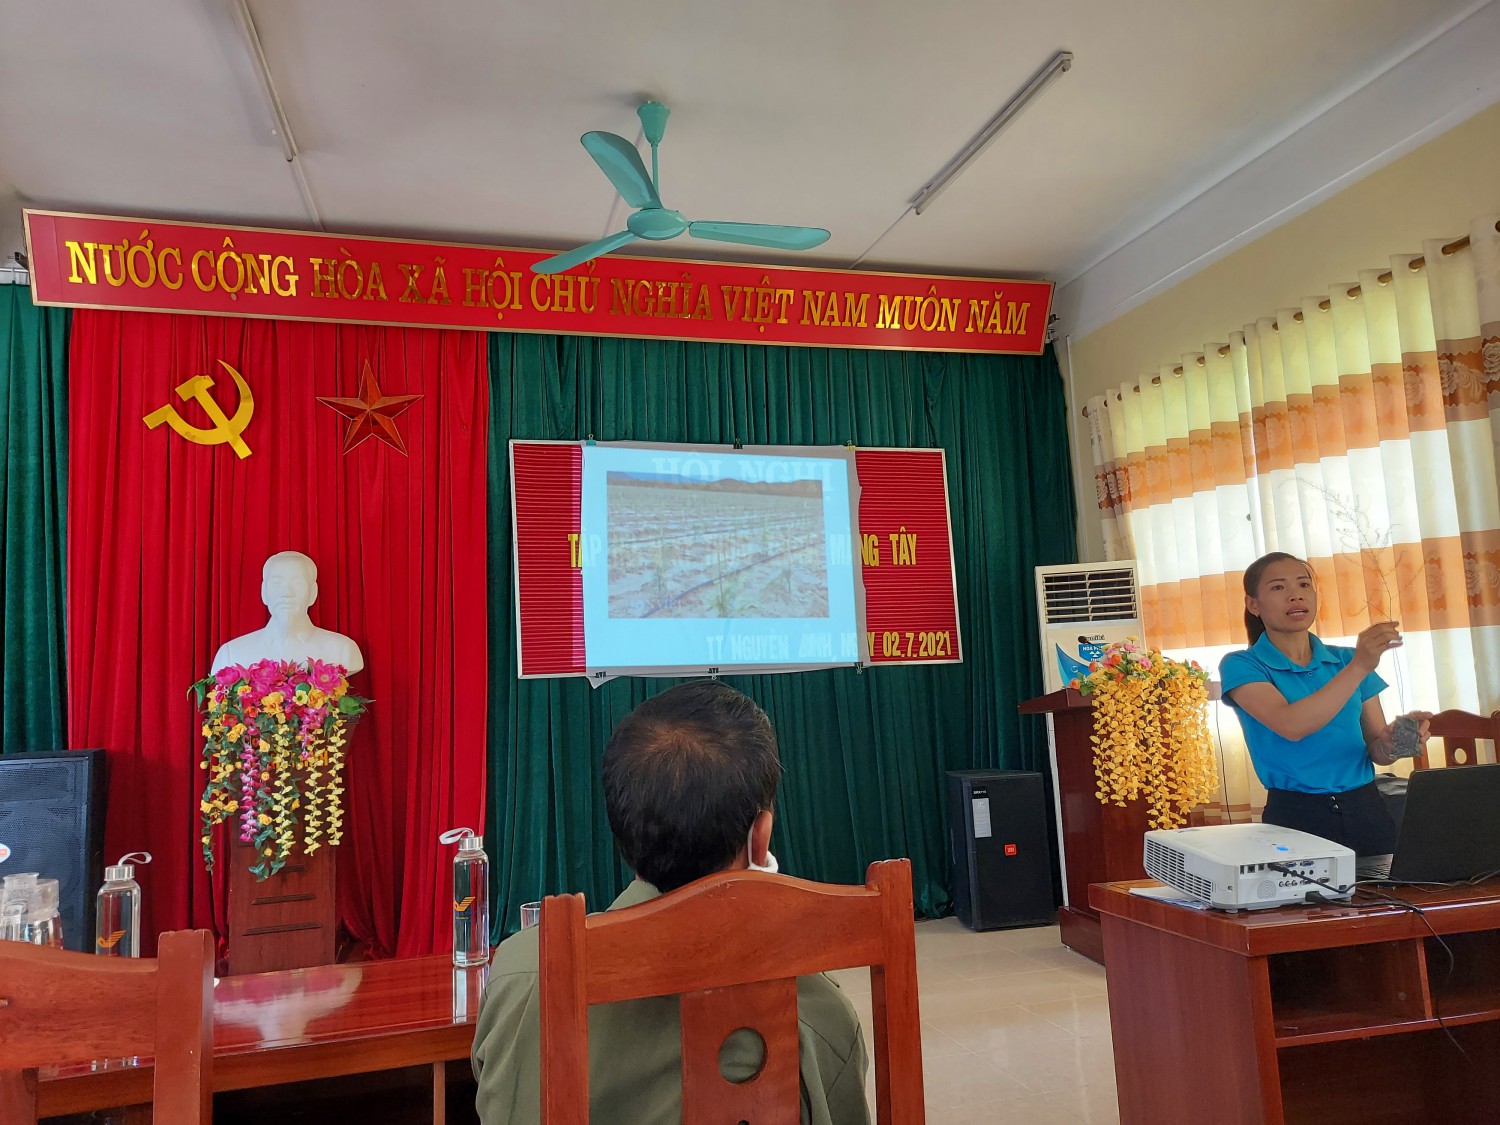 Đồng chí Đàm Thị Lan, Phó giám đốc Trung tâm dịch vụ Nông nghiệp huyện Nguyên Bình lên lớp tập huấn